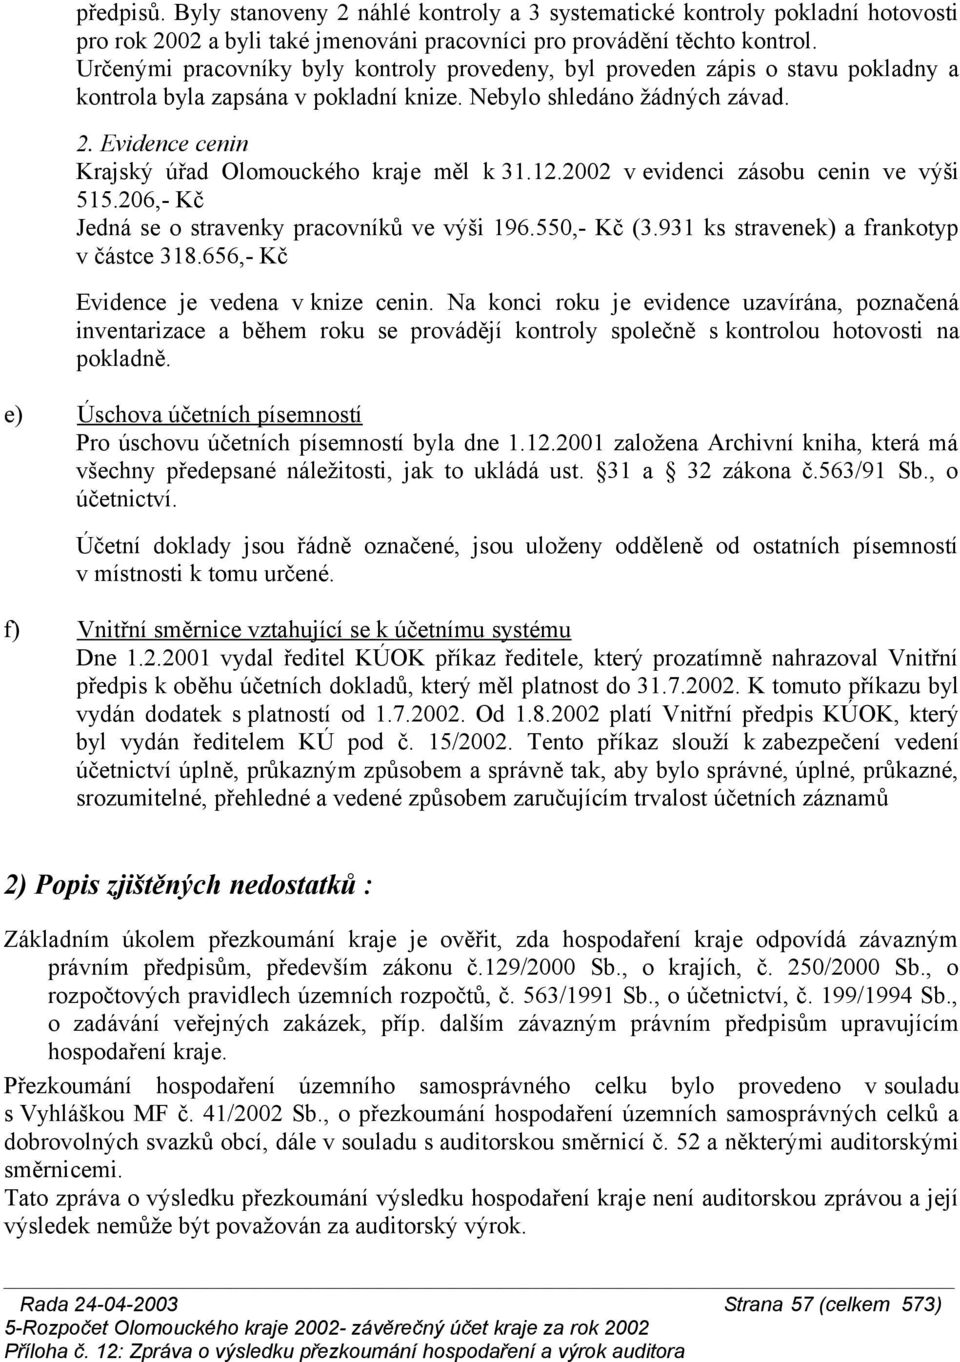 Evidence cenin Krajský úřad Olomouckého kraje měl k 31.12.2002 v evidenci zásobu cenin ve výši 515.206,- Kč Jedná se o stravenky pracovníků ve výši 196.550,- Kč (3.